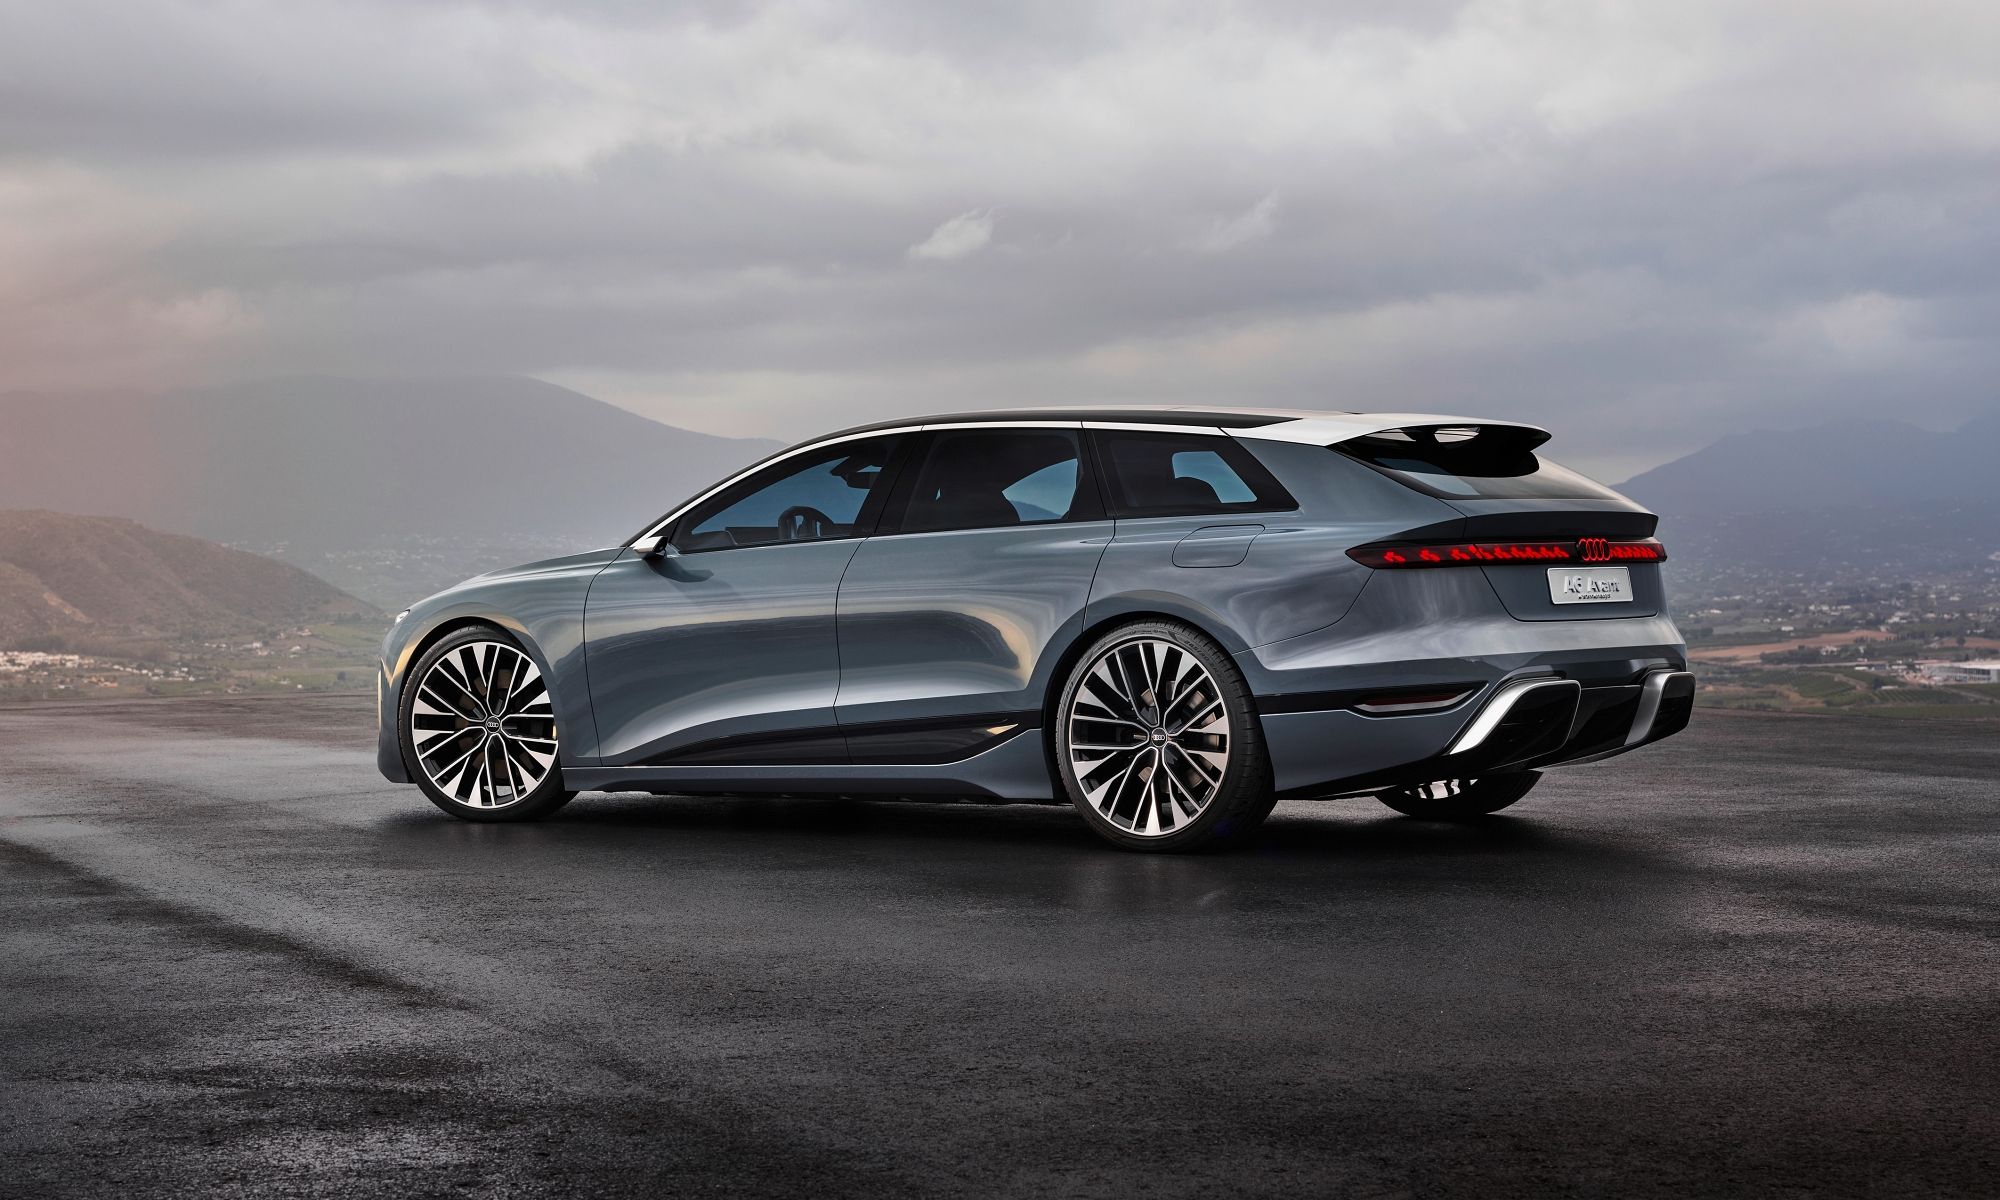 El nuevo A6 supondrá un cambio radical y meterá a Audi en una nueva era.